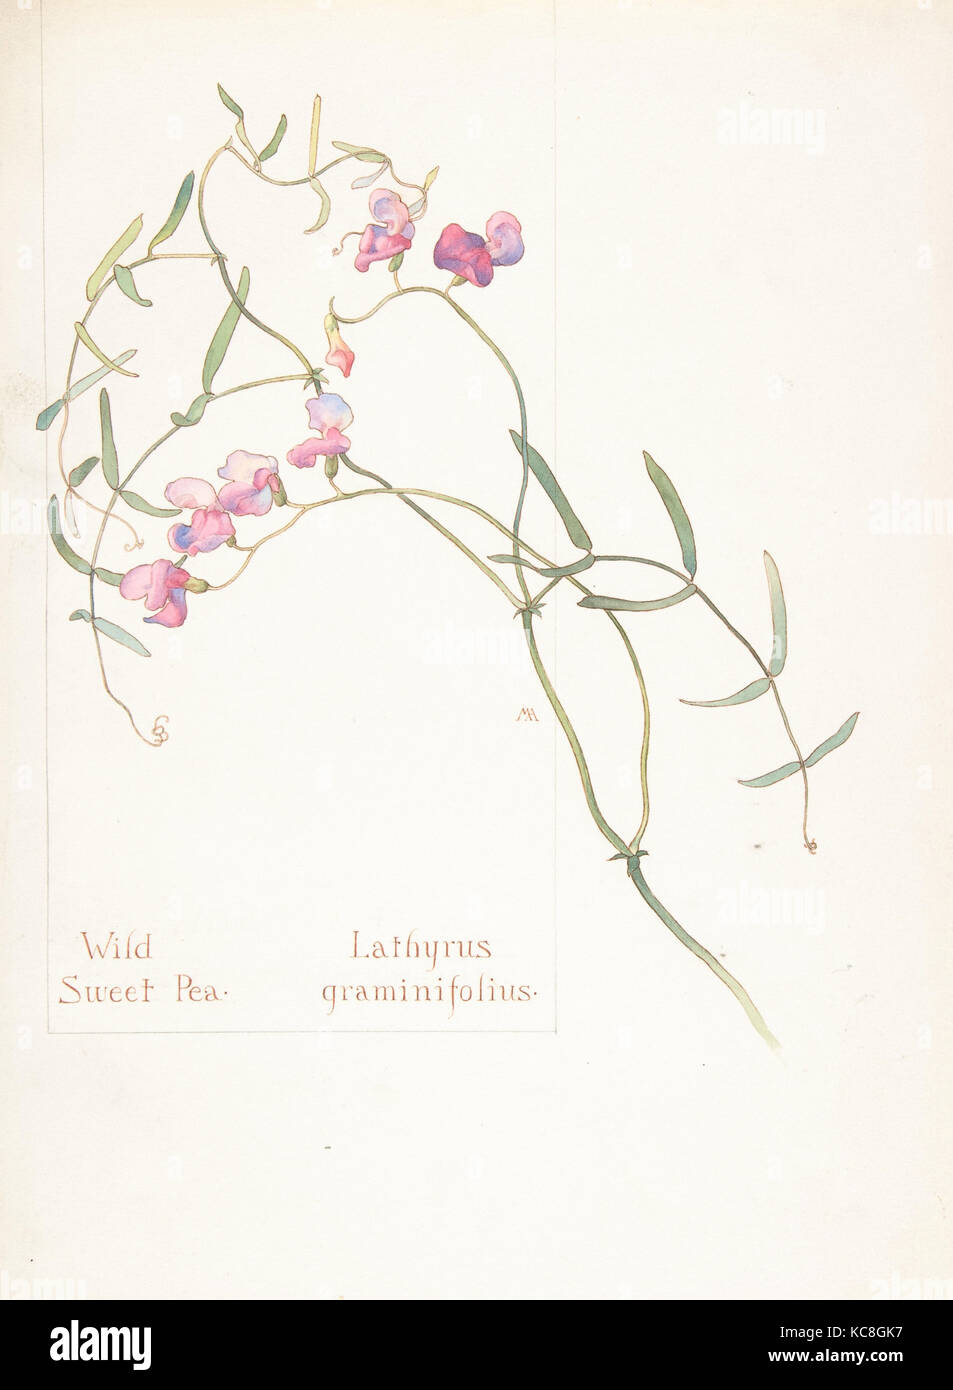 Wild Sweet Pea, Lathyrus graminifolius, Margaret Neilson Armstrong, May 12, 1912 Stock Photo